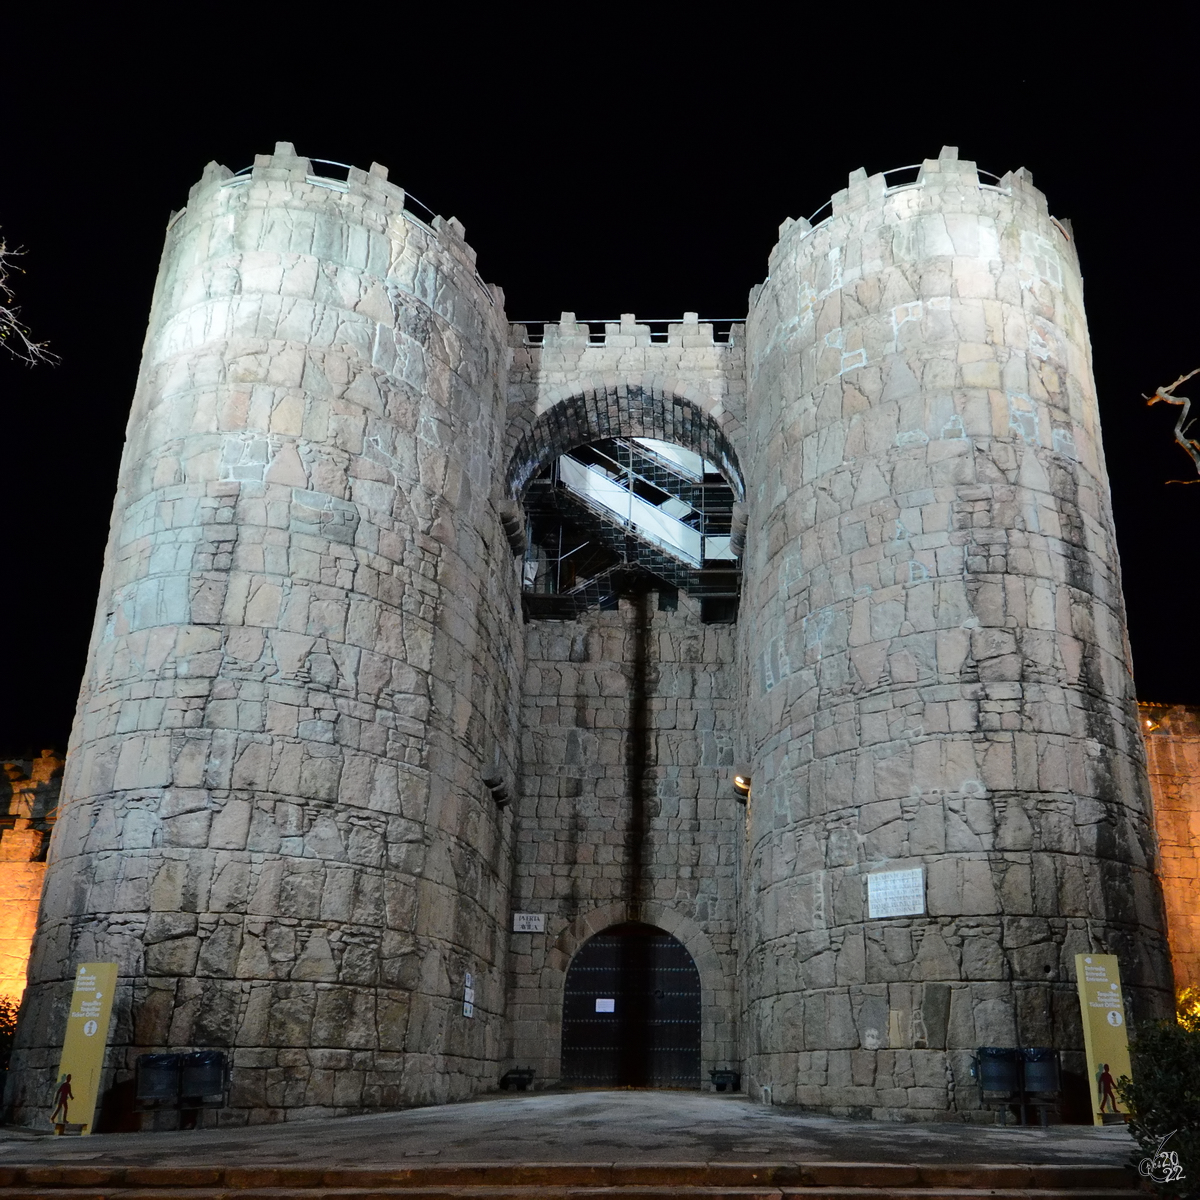 Ein Turmbau an den Außenmauern des Poble Espanyol (Spanisches Dorf), einem 1929 anlässlich der Weltausstellung errichteten Freilichtmuseum in Barcelona. (Februar 2013)